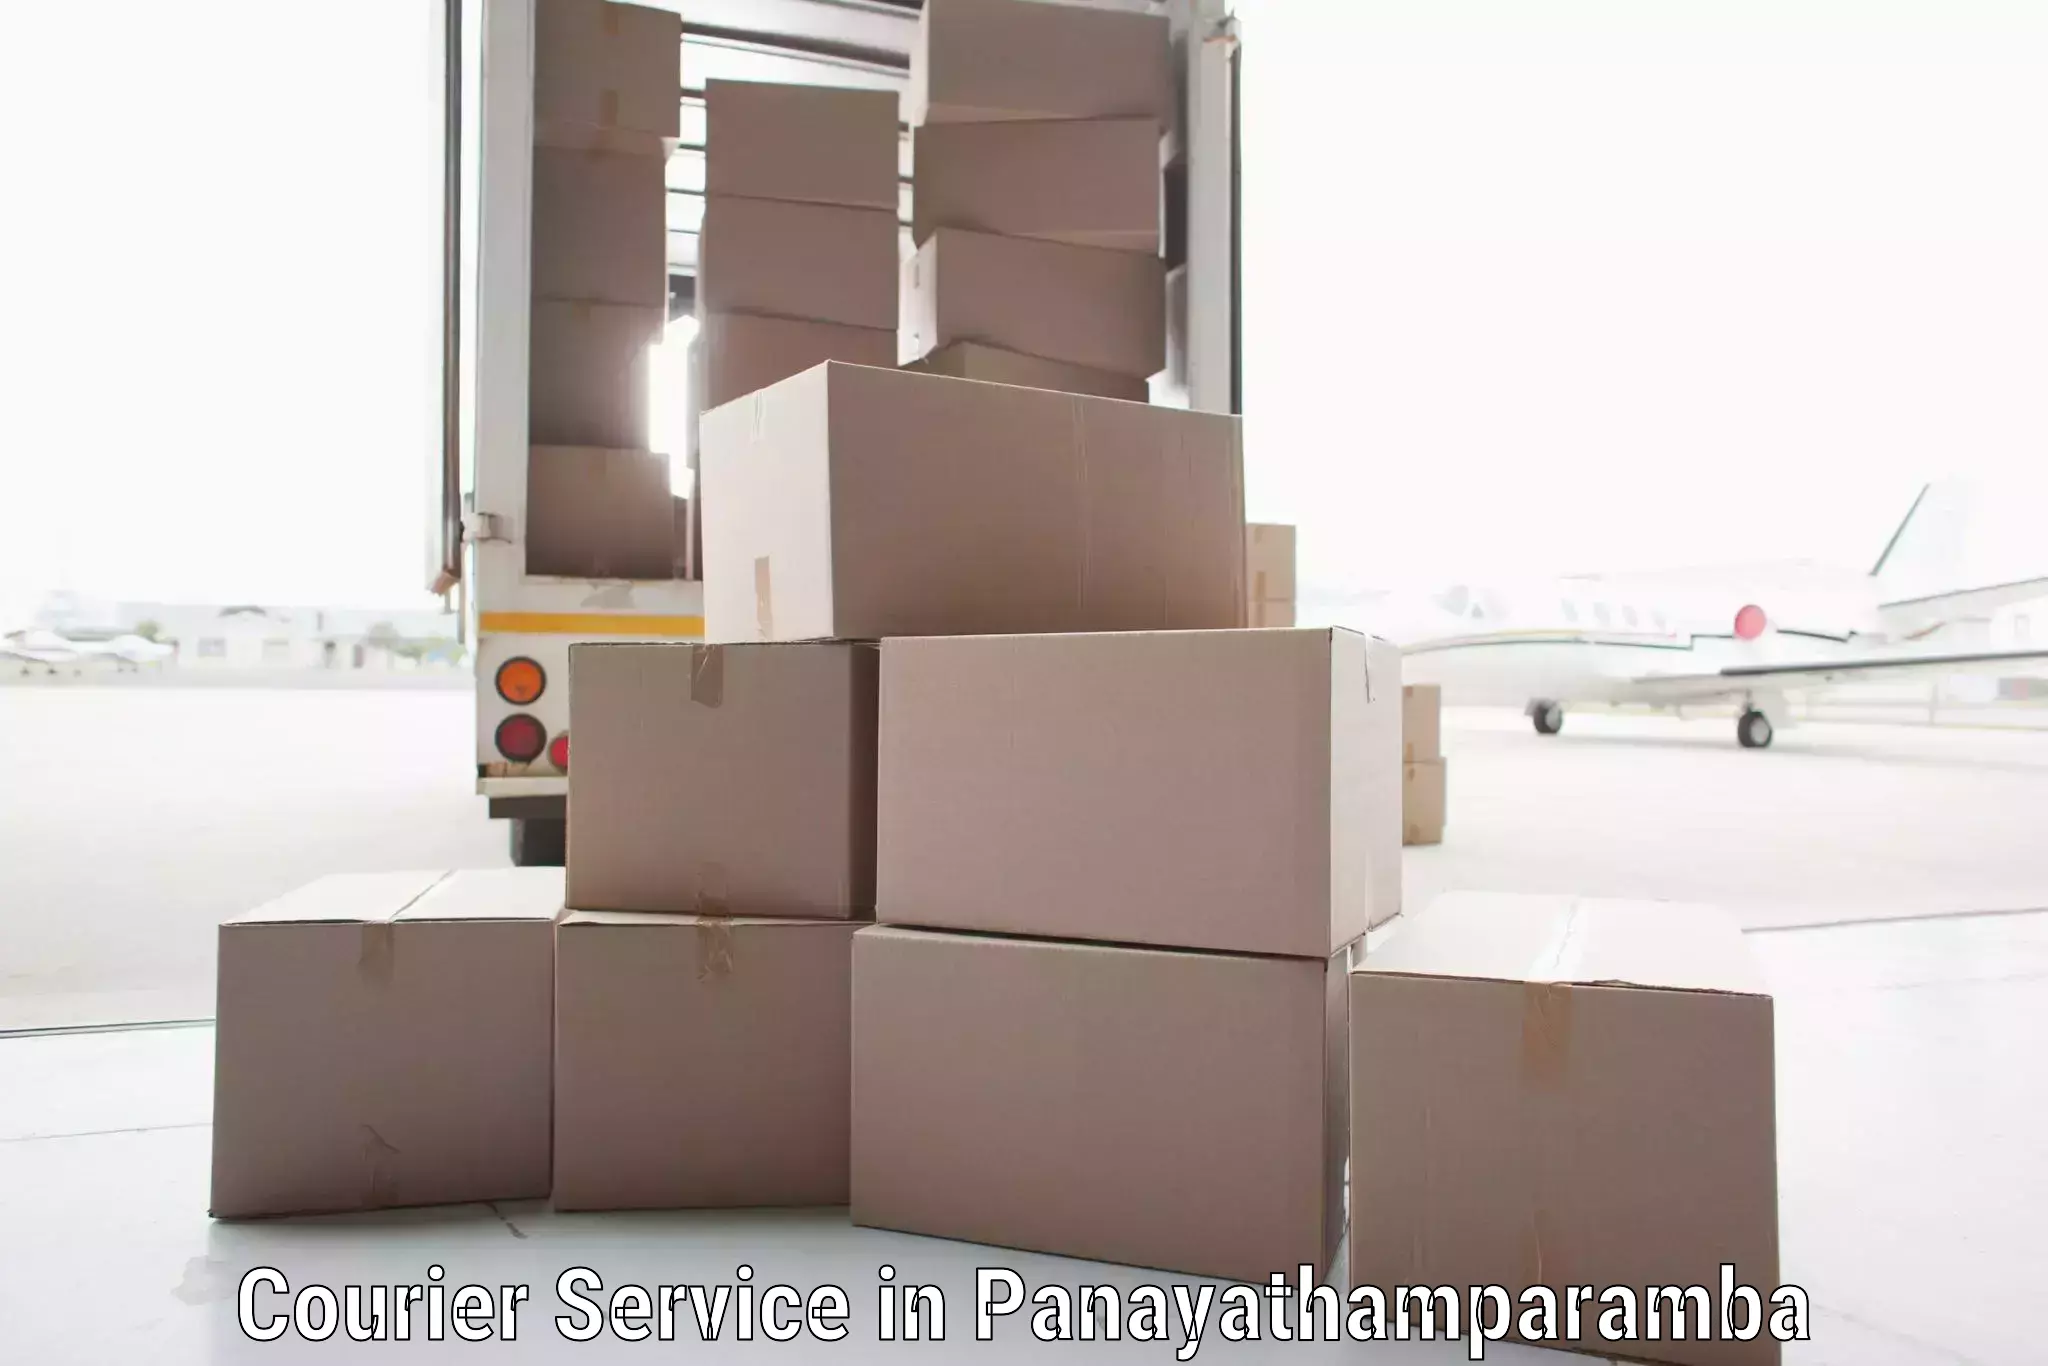 Flexible shipping options in Panayathamparamba